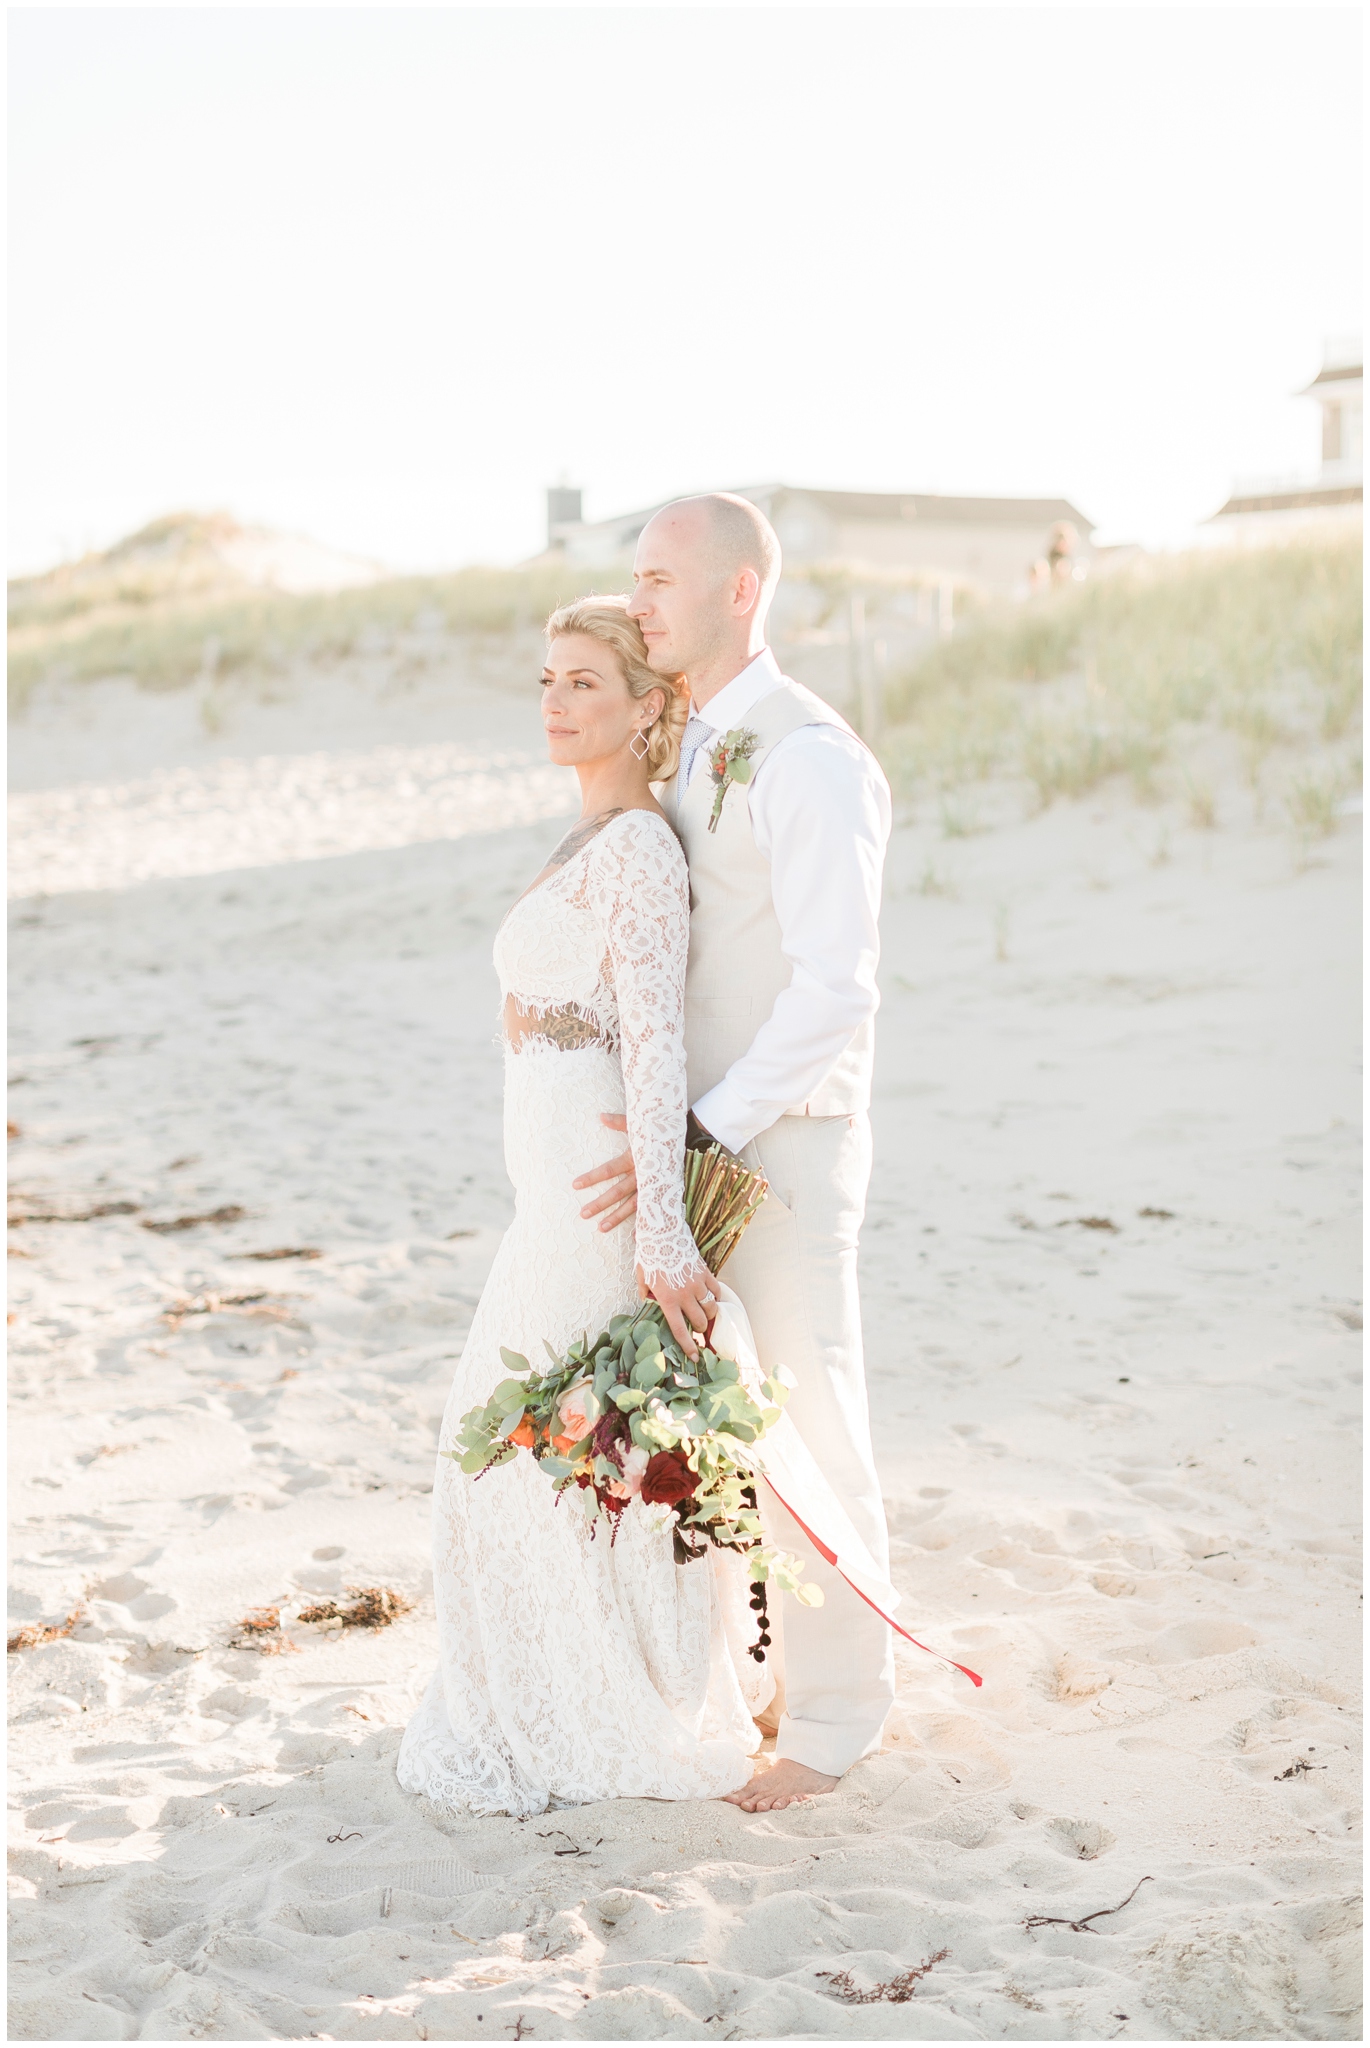 Wedding Photos on Beach